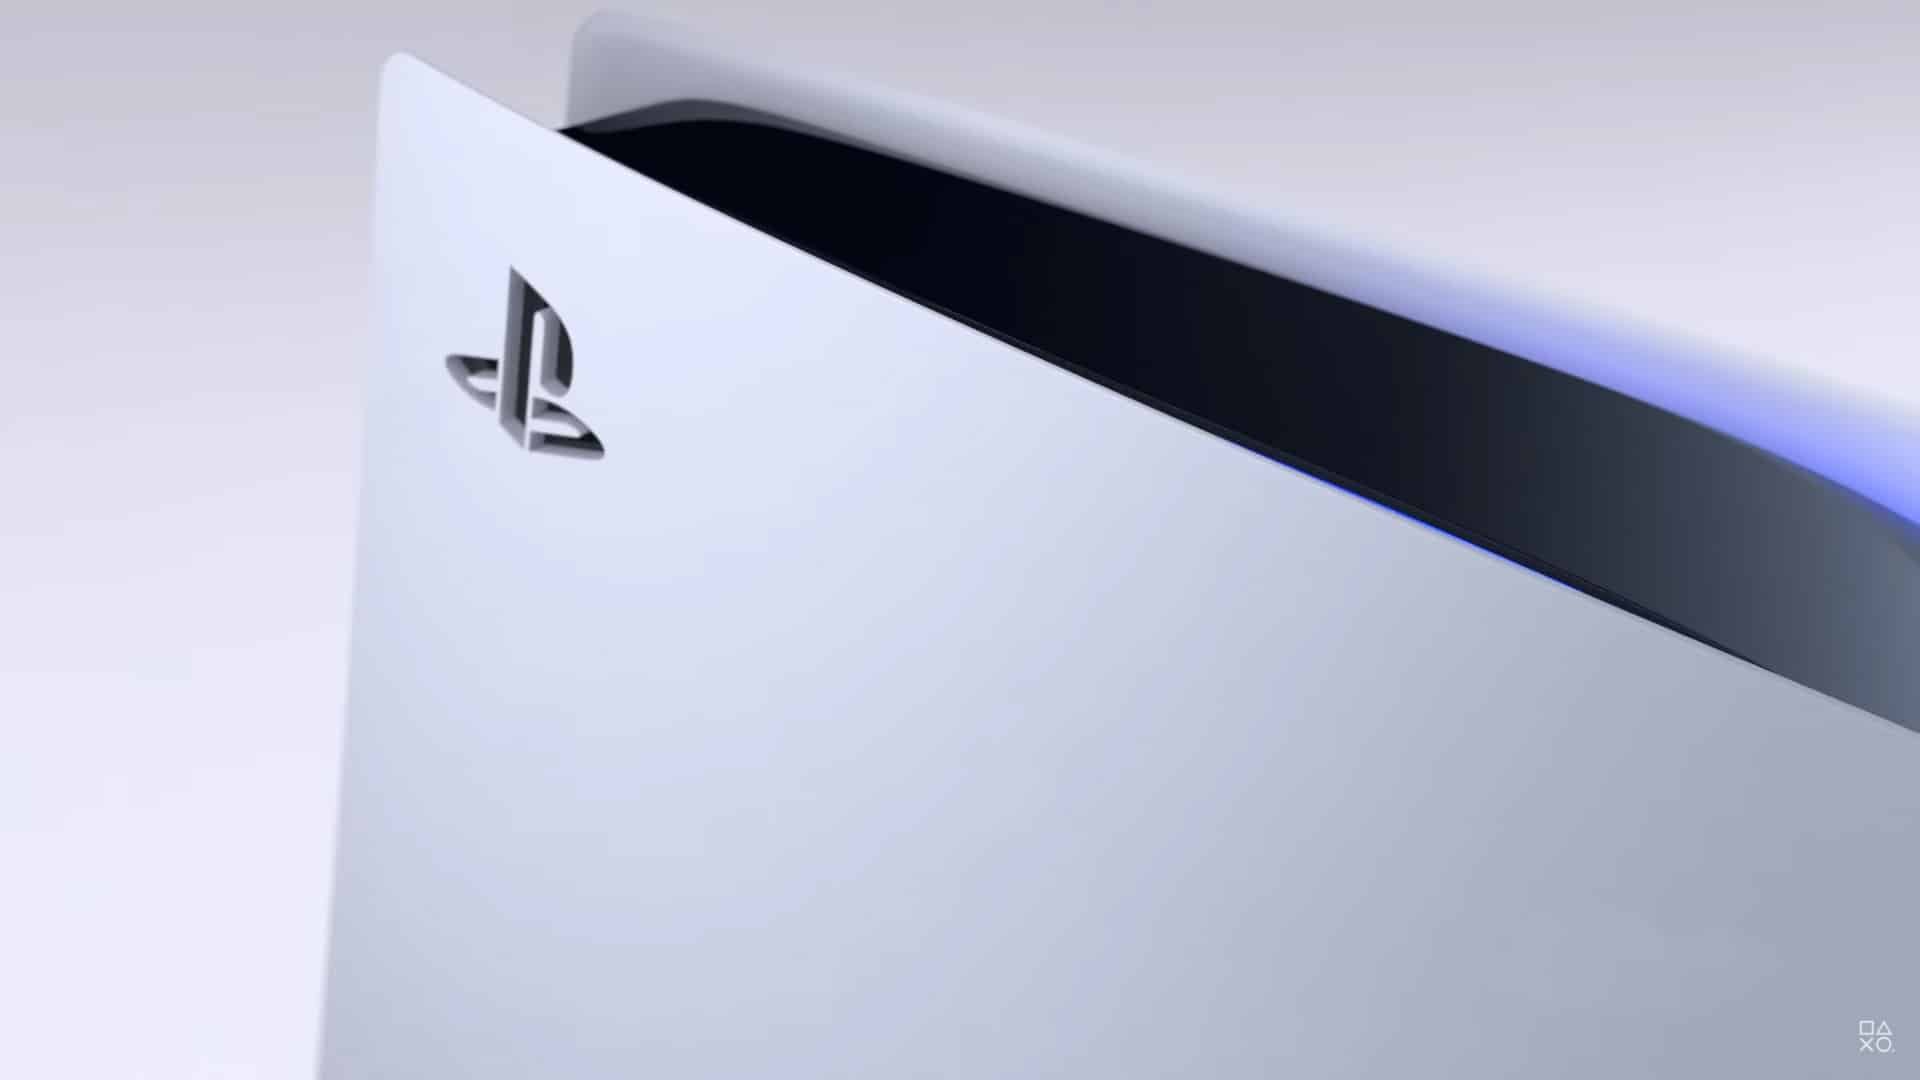 Edição digital e bundle do PlayStation 5 estão em oferta - NerdBunker